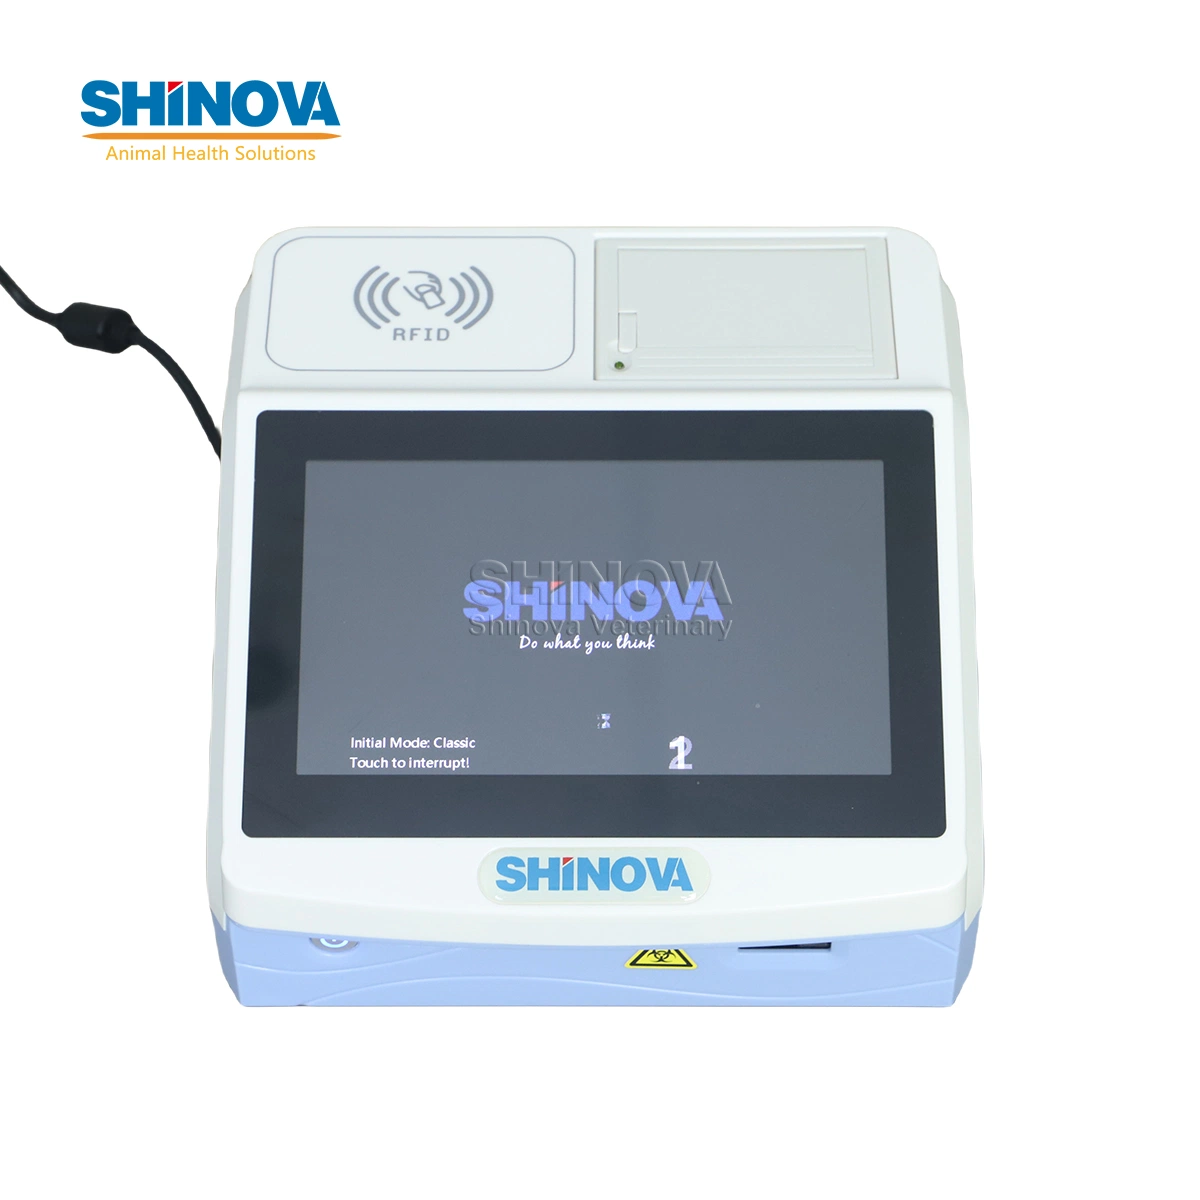 Shinova Analyseur d'immunoessai par fluorescence vétérinaire à écran tactile Analyseur quantitatif d'immunofluorescence vétérinaire (FQ-100)